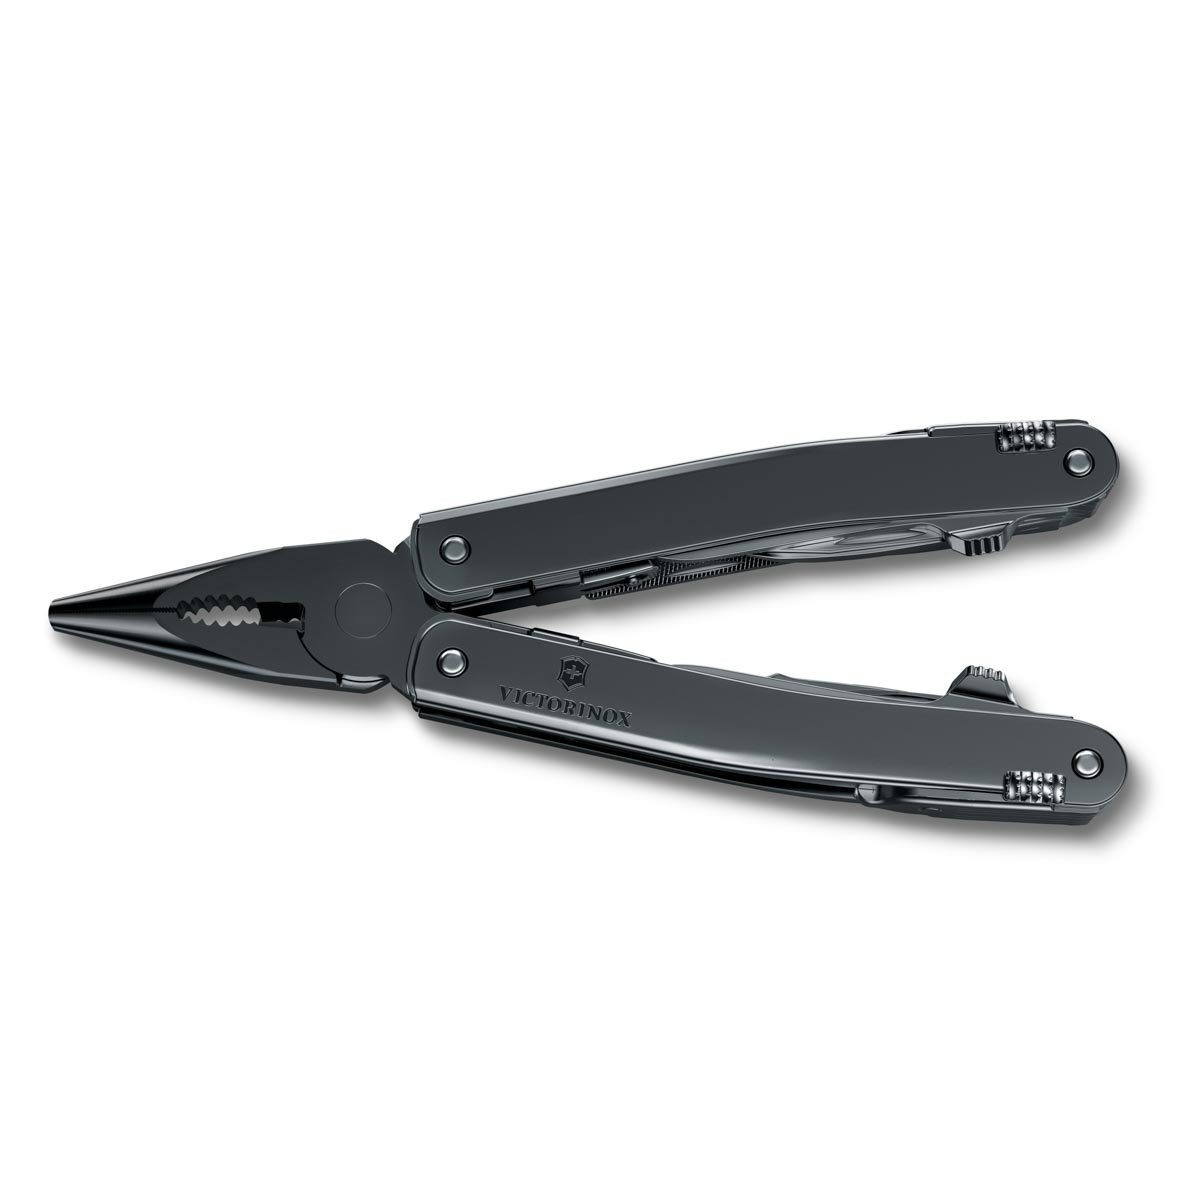 Victorinox Spirit Nylon Etui Taschenmesser MXBS, in schwarz, Swiss Tool